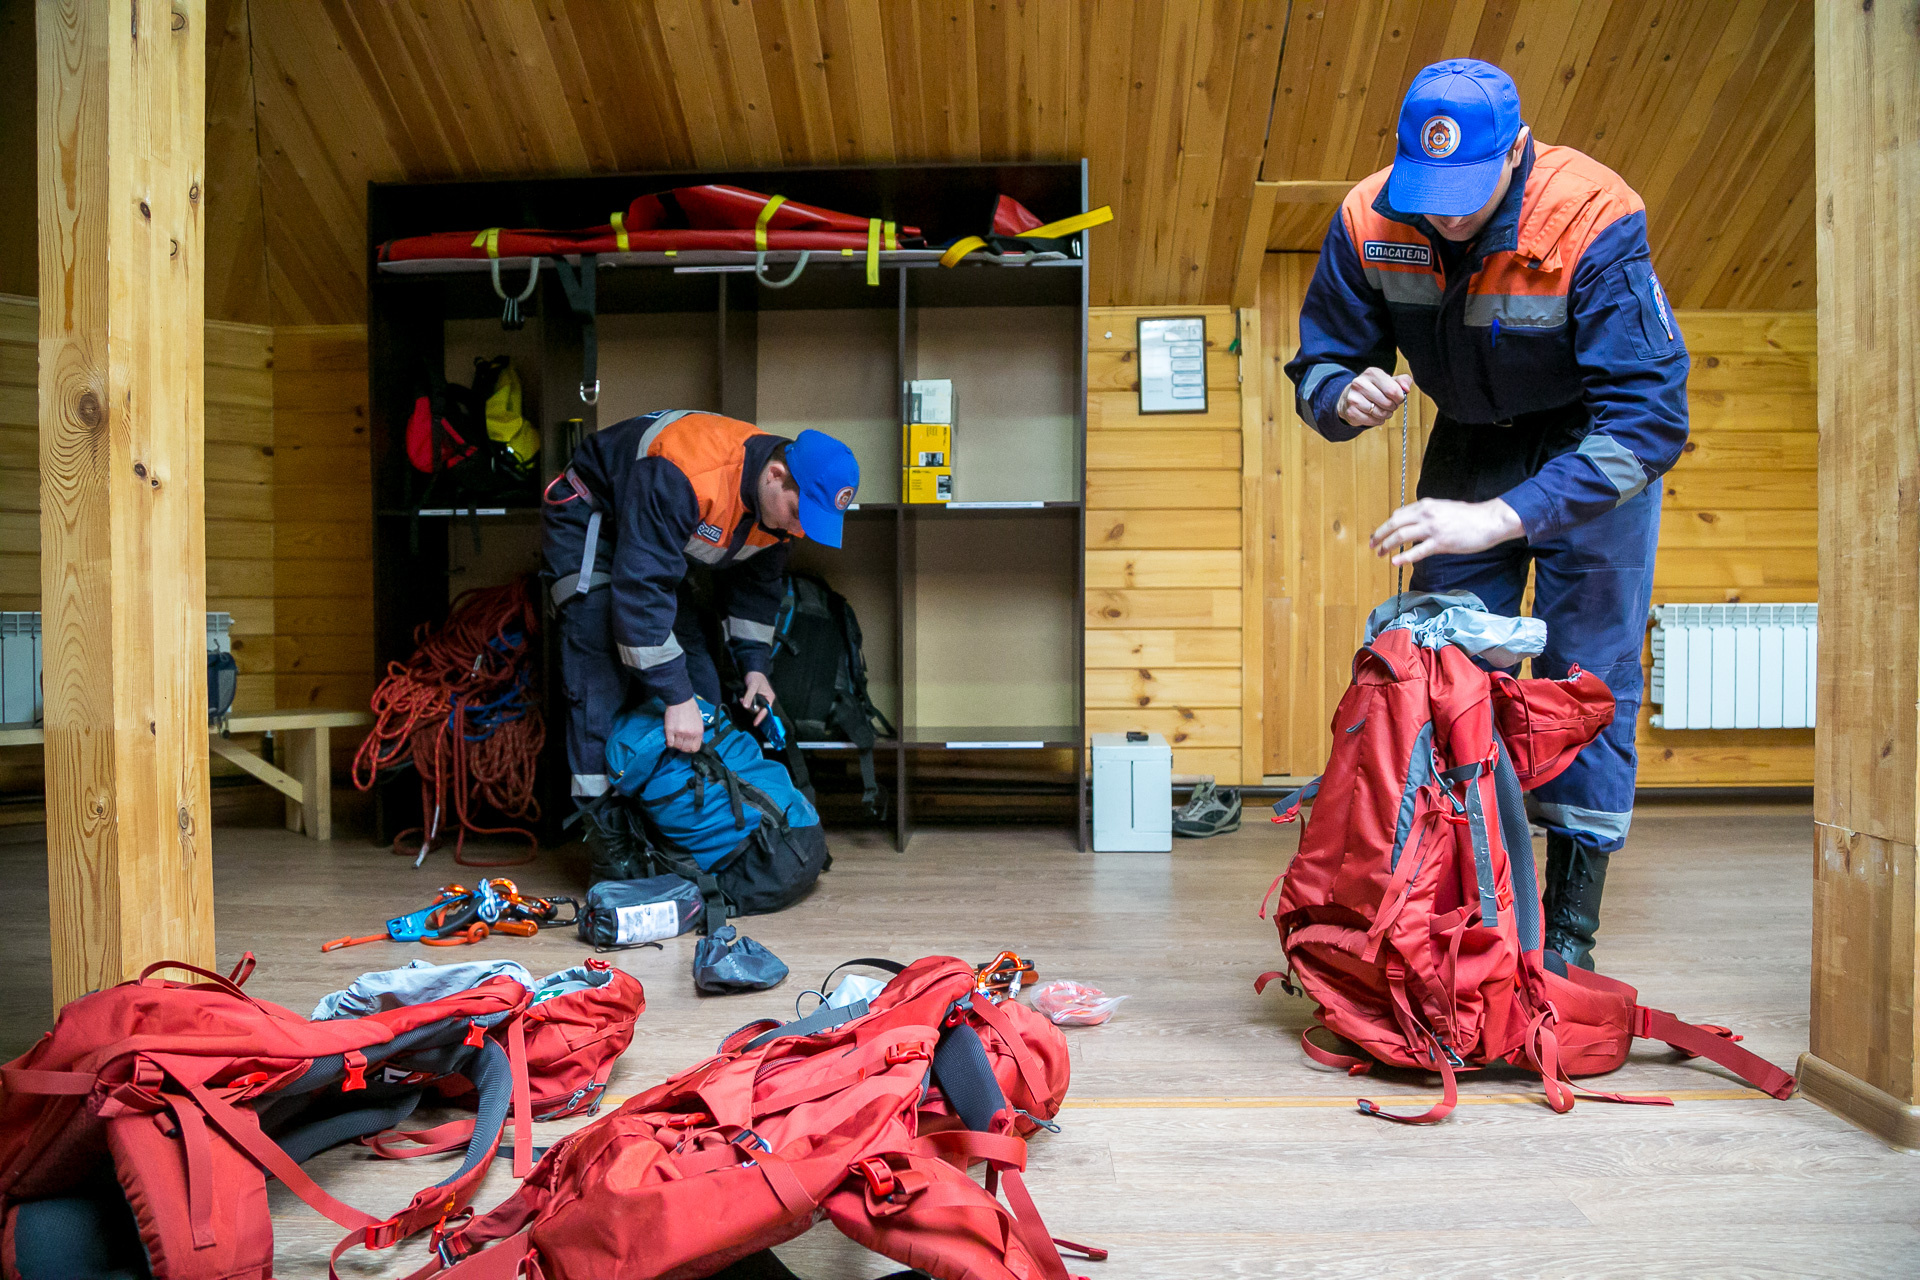 Перед патрулированием спасатели собирают альпинистское снаряжение